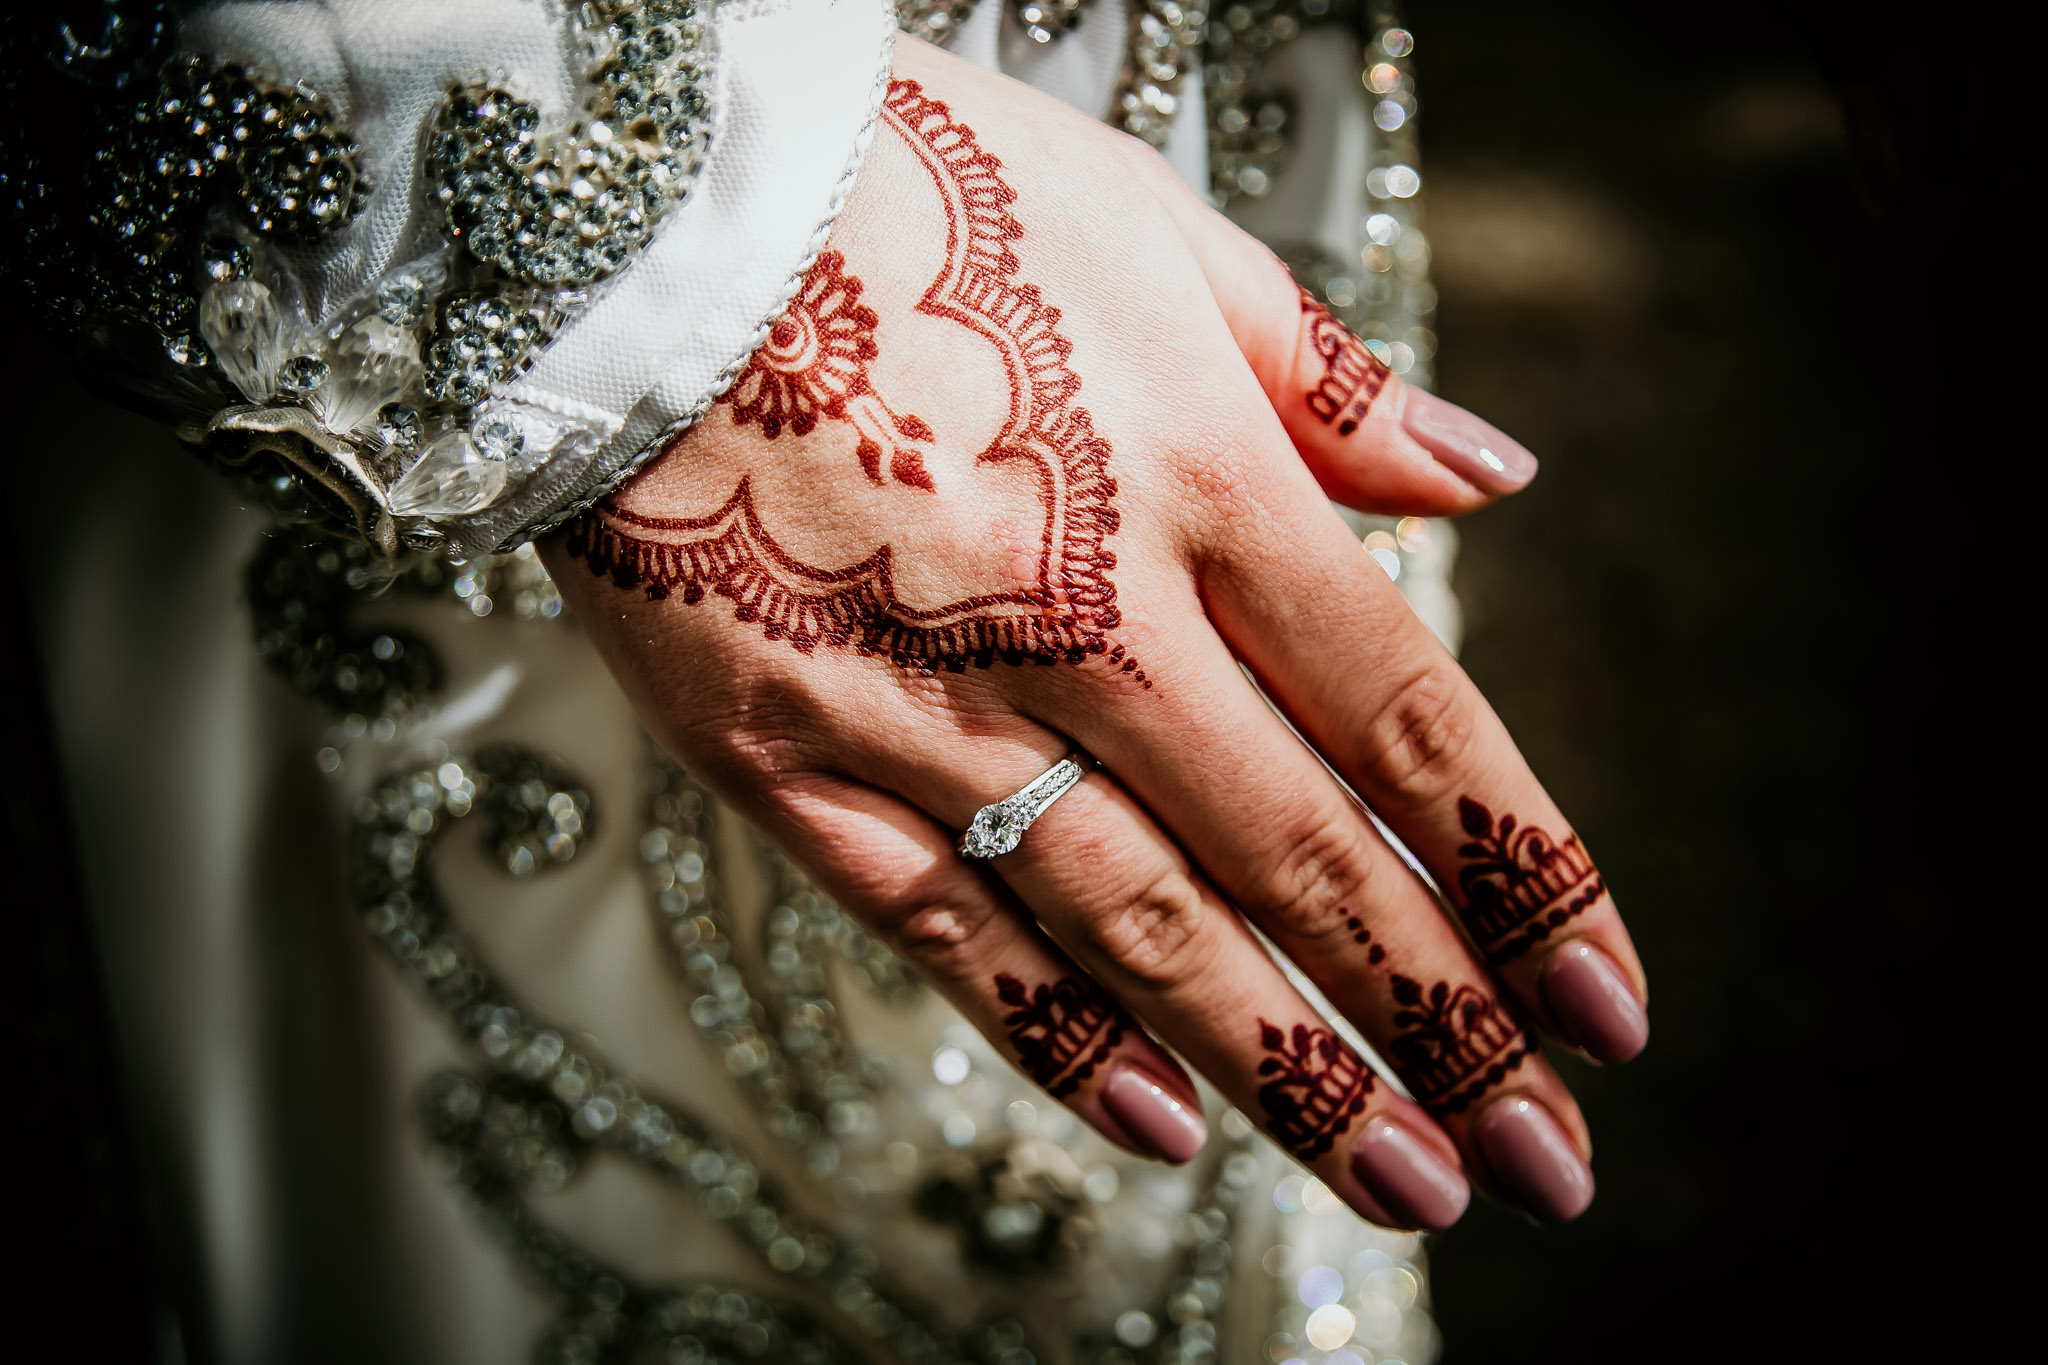 buitenland-destination-wedding-bruiloft-trouwfotograaf-bruidsfotograaf